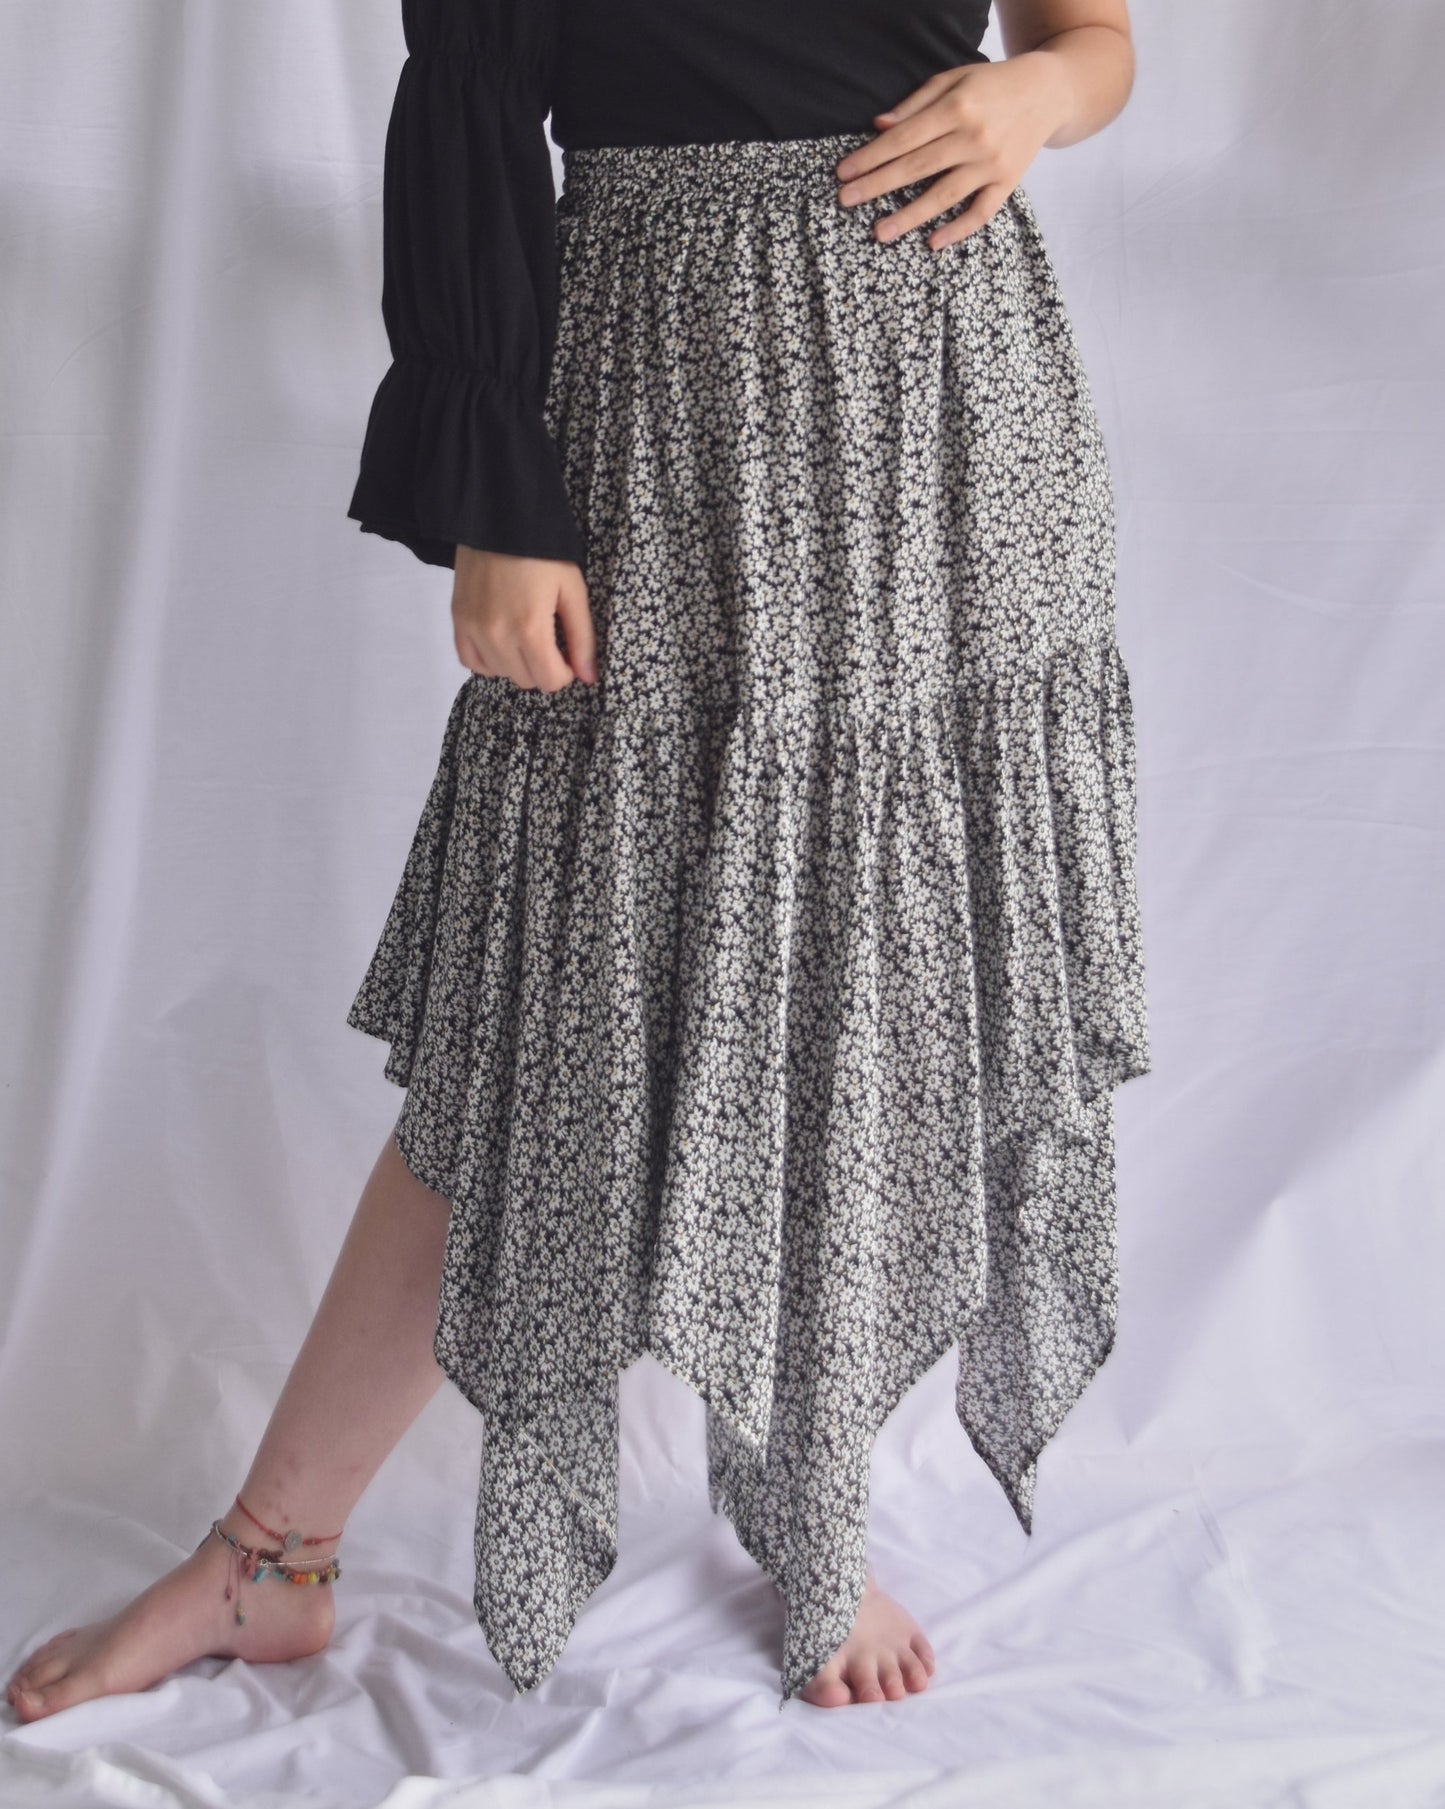 Falda midi estampada con mini print de flores, en chalis, con resorte en la cintura y bolero en punta hasta los tobillos